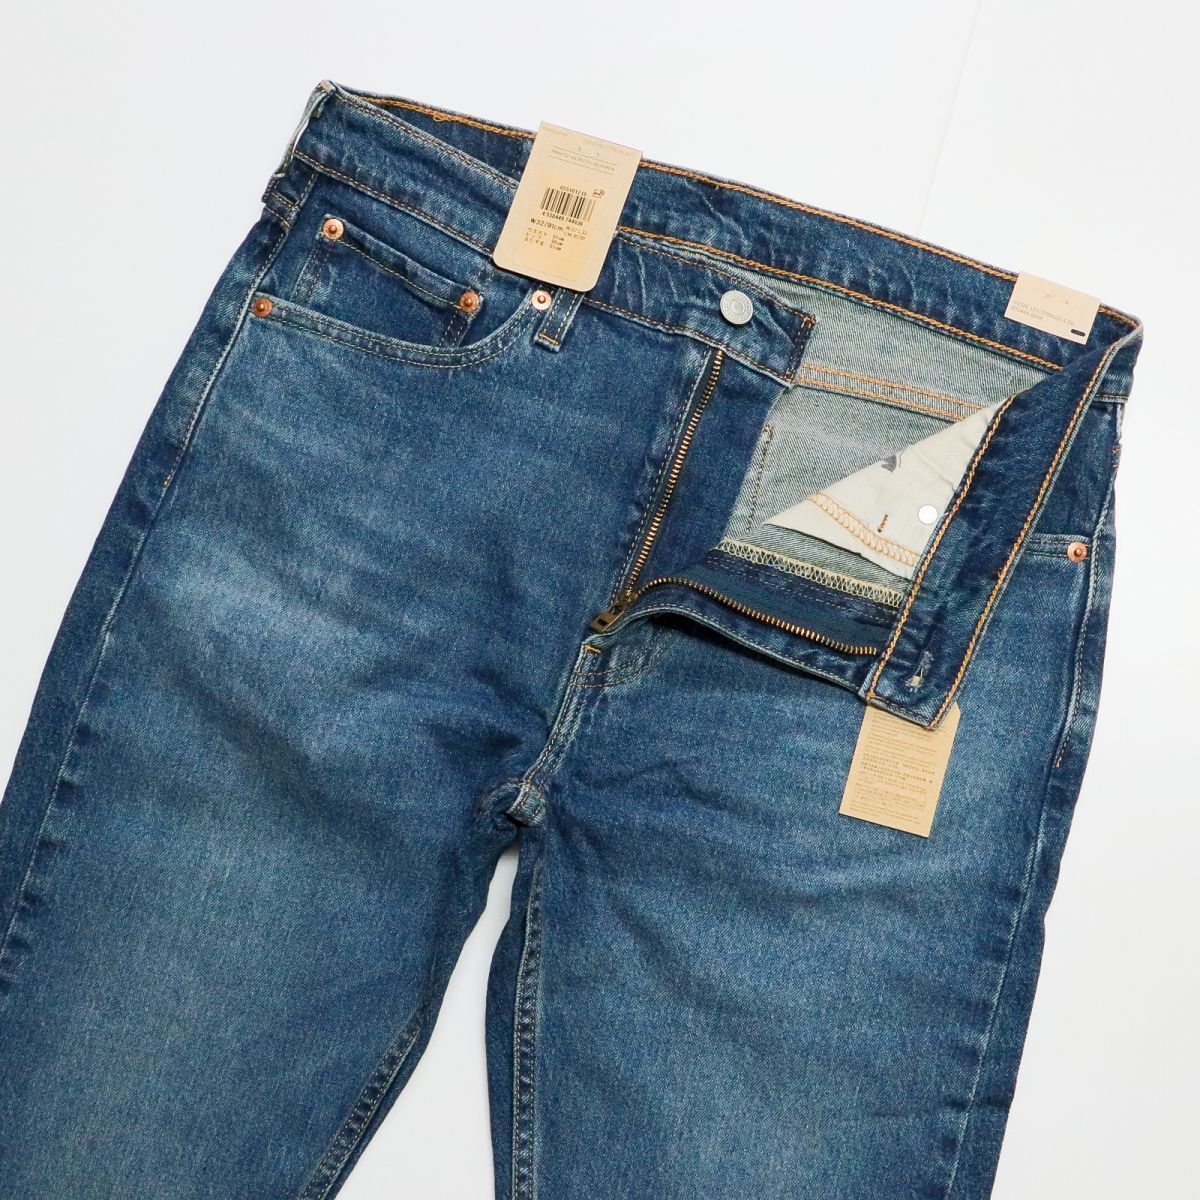 * Levi's Levis 510 новый товар мужской удобный стрейч casual обтягивающий джинсы Denim 30 дюймовый [05510-1210-30] 4 .*QWER*